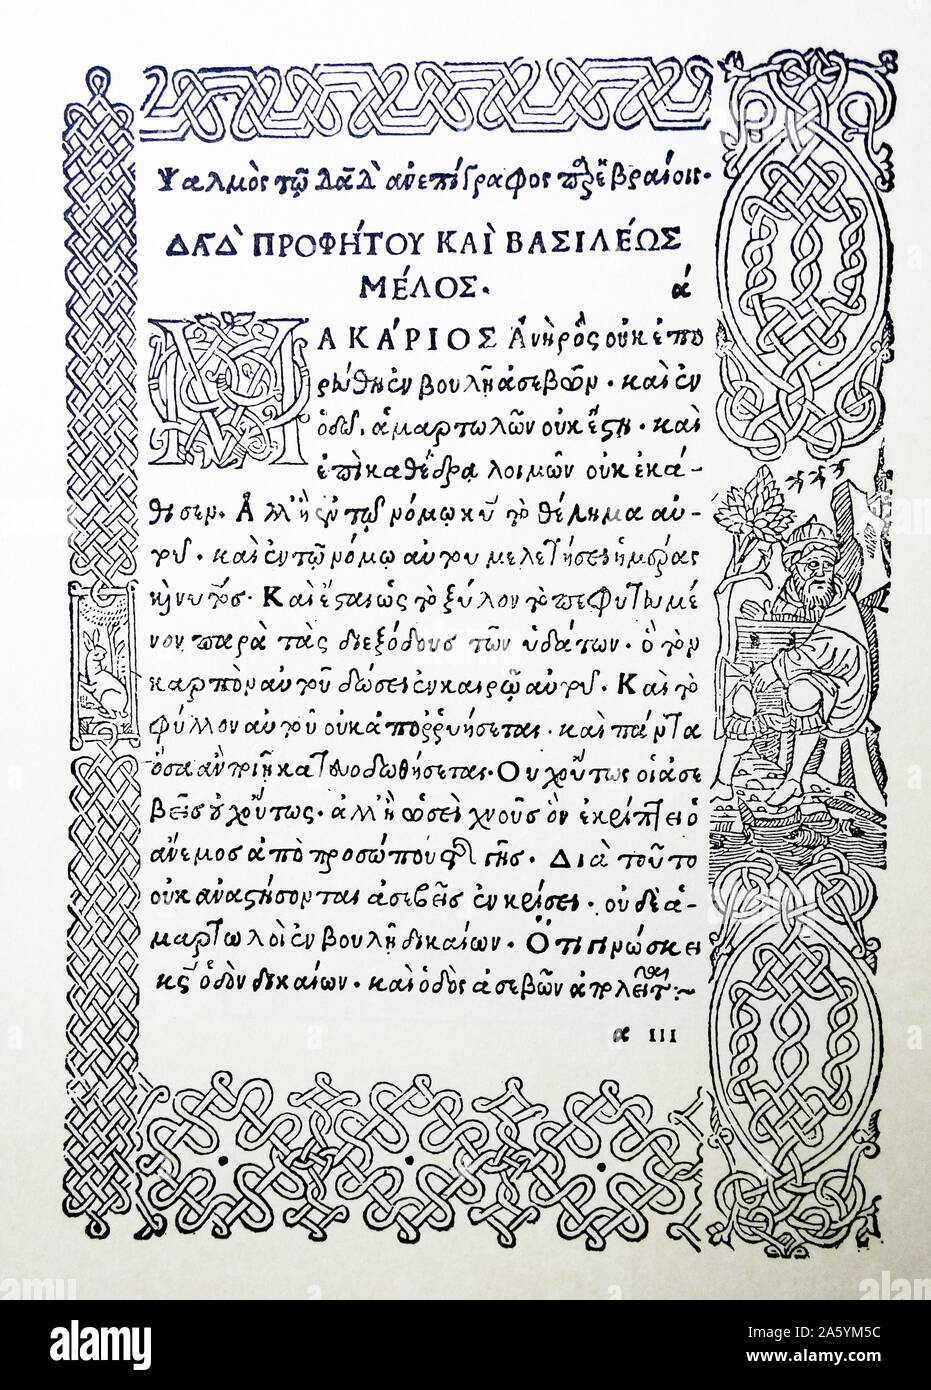 Comoediae novum de Aristófanes. Xilografía fechado en 1498 Foto de stock